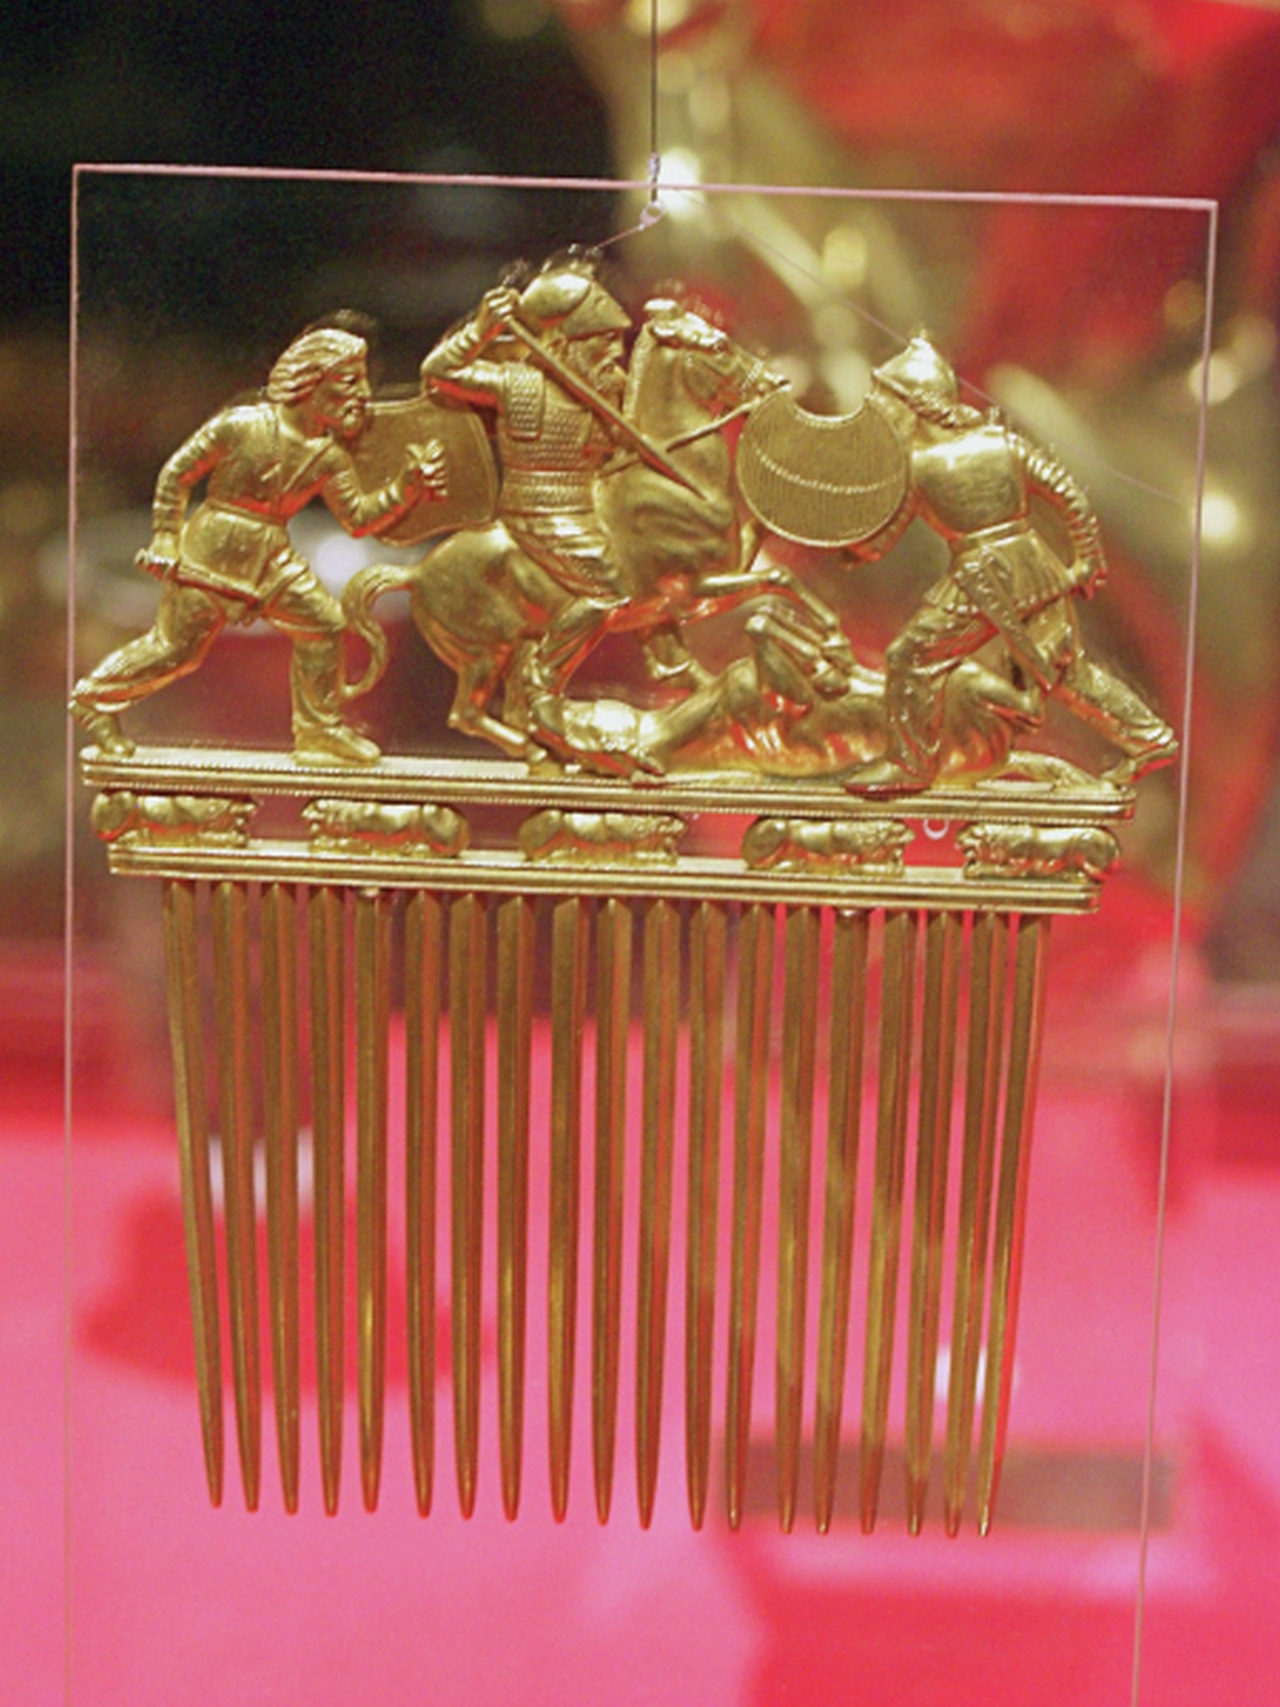 Гребень с изображением батальной сцены. Золото, 430-390 гг. до н.э. Приднестровье, курган Солоха.